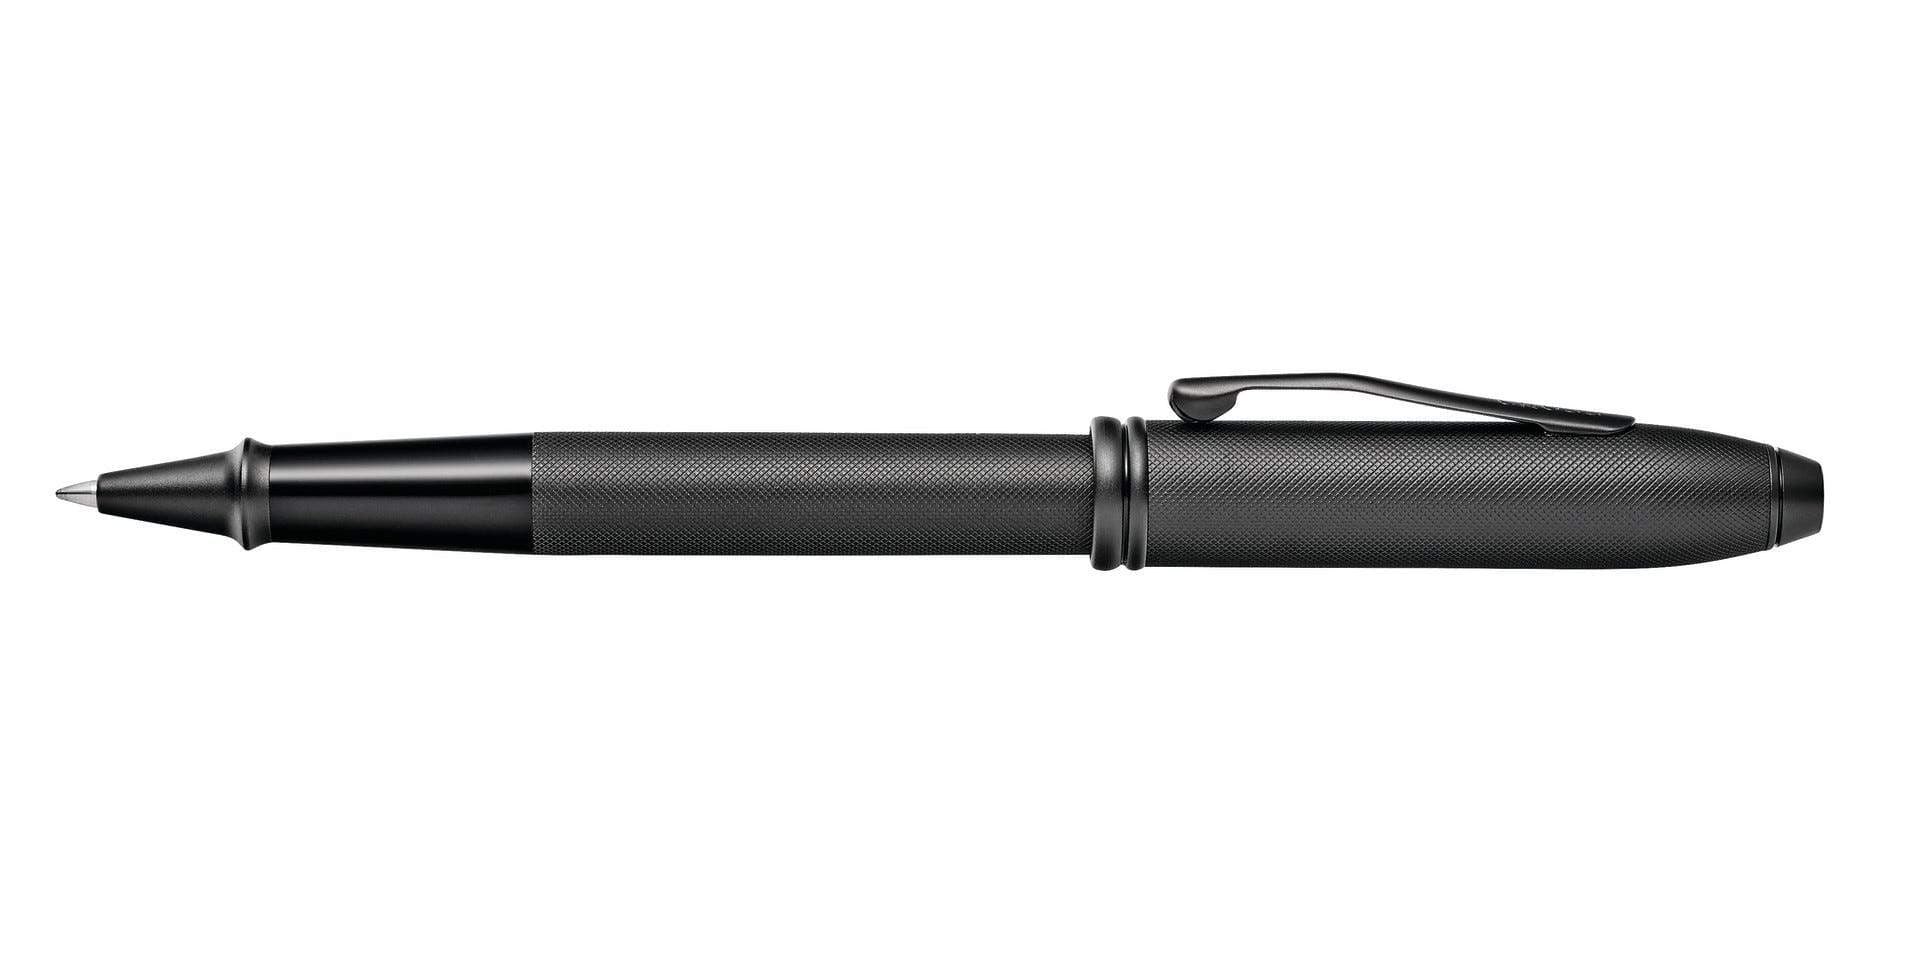 قلم كرو كرو كرول أسود من كروس تاونسند مع قلم ممات بي في دي أبنتس رولينج بول - AT0045-62